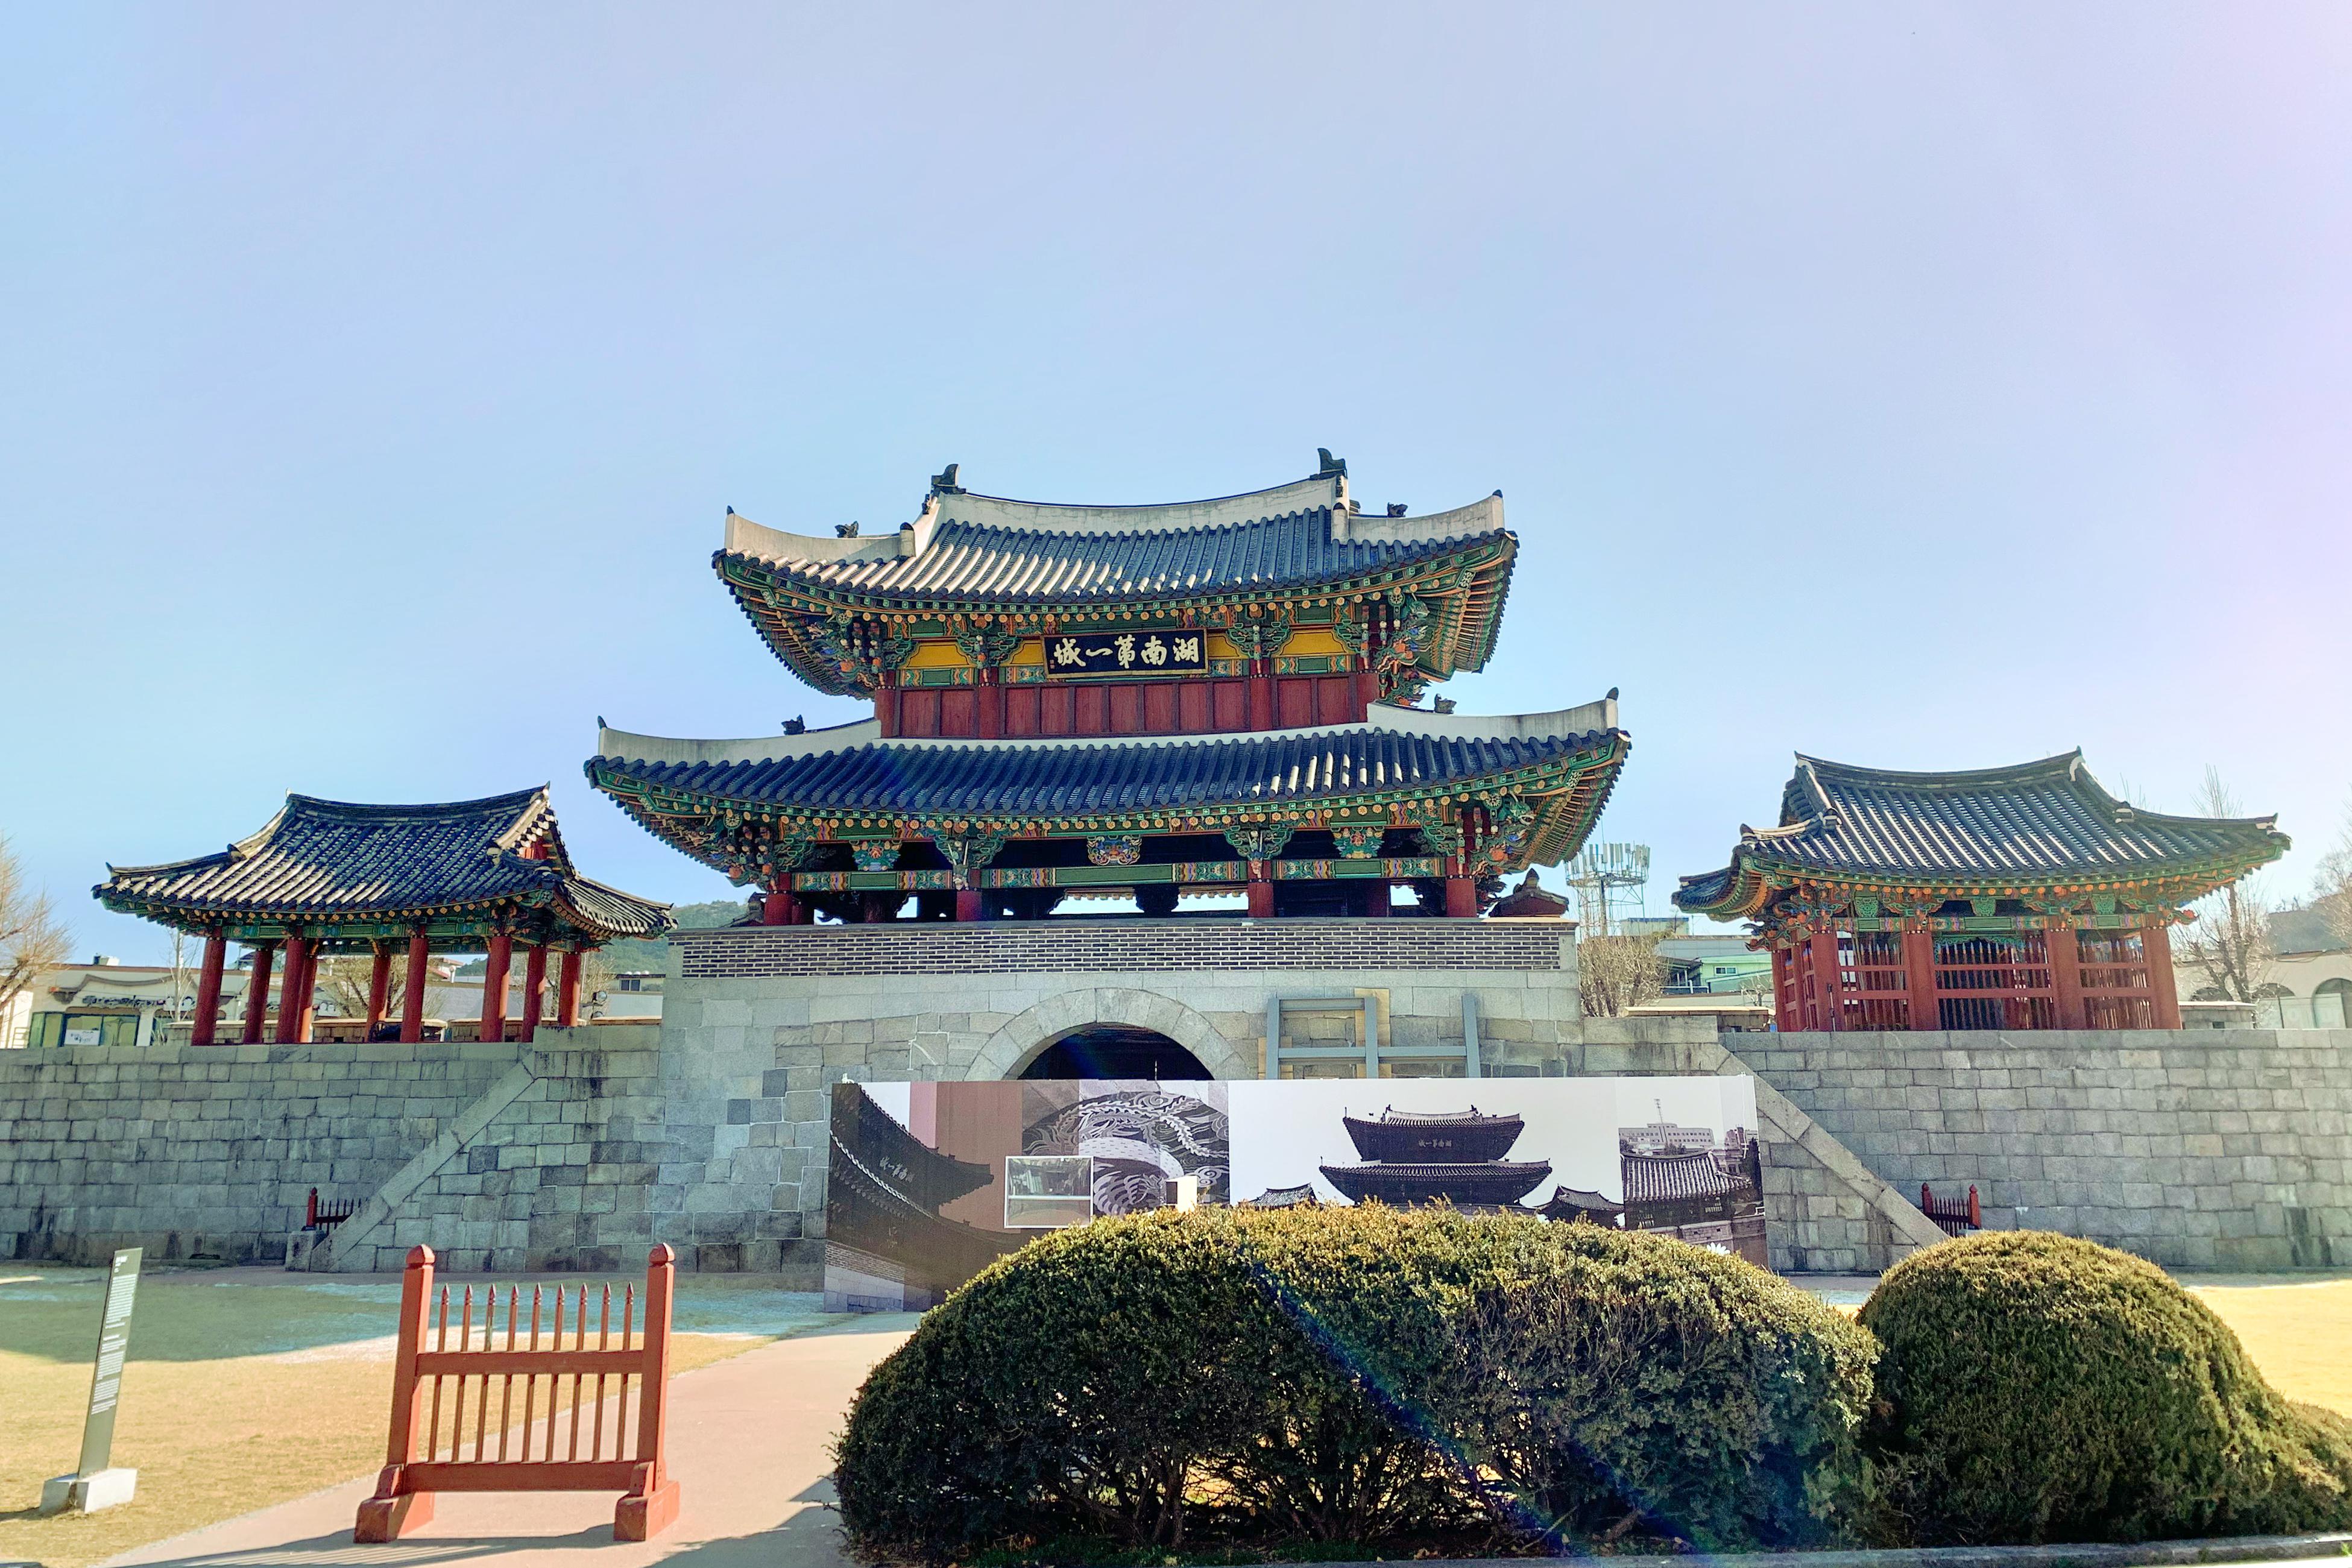 jeonju south korea tourism